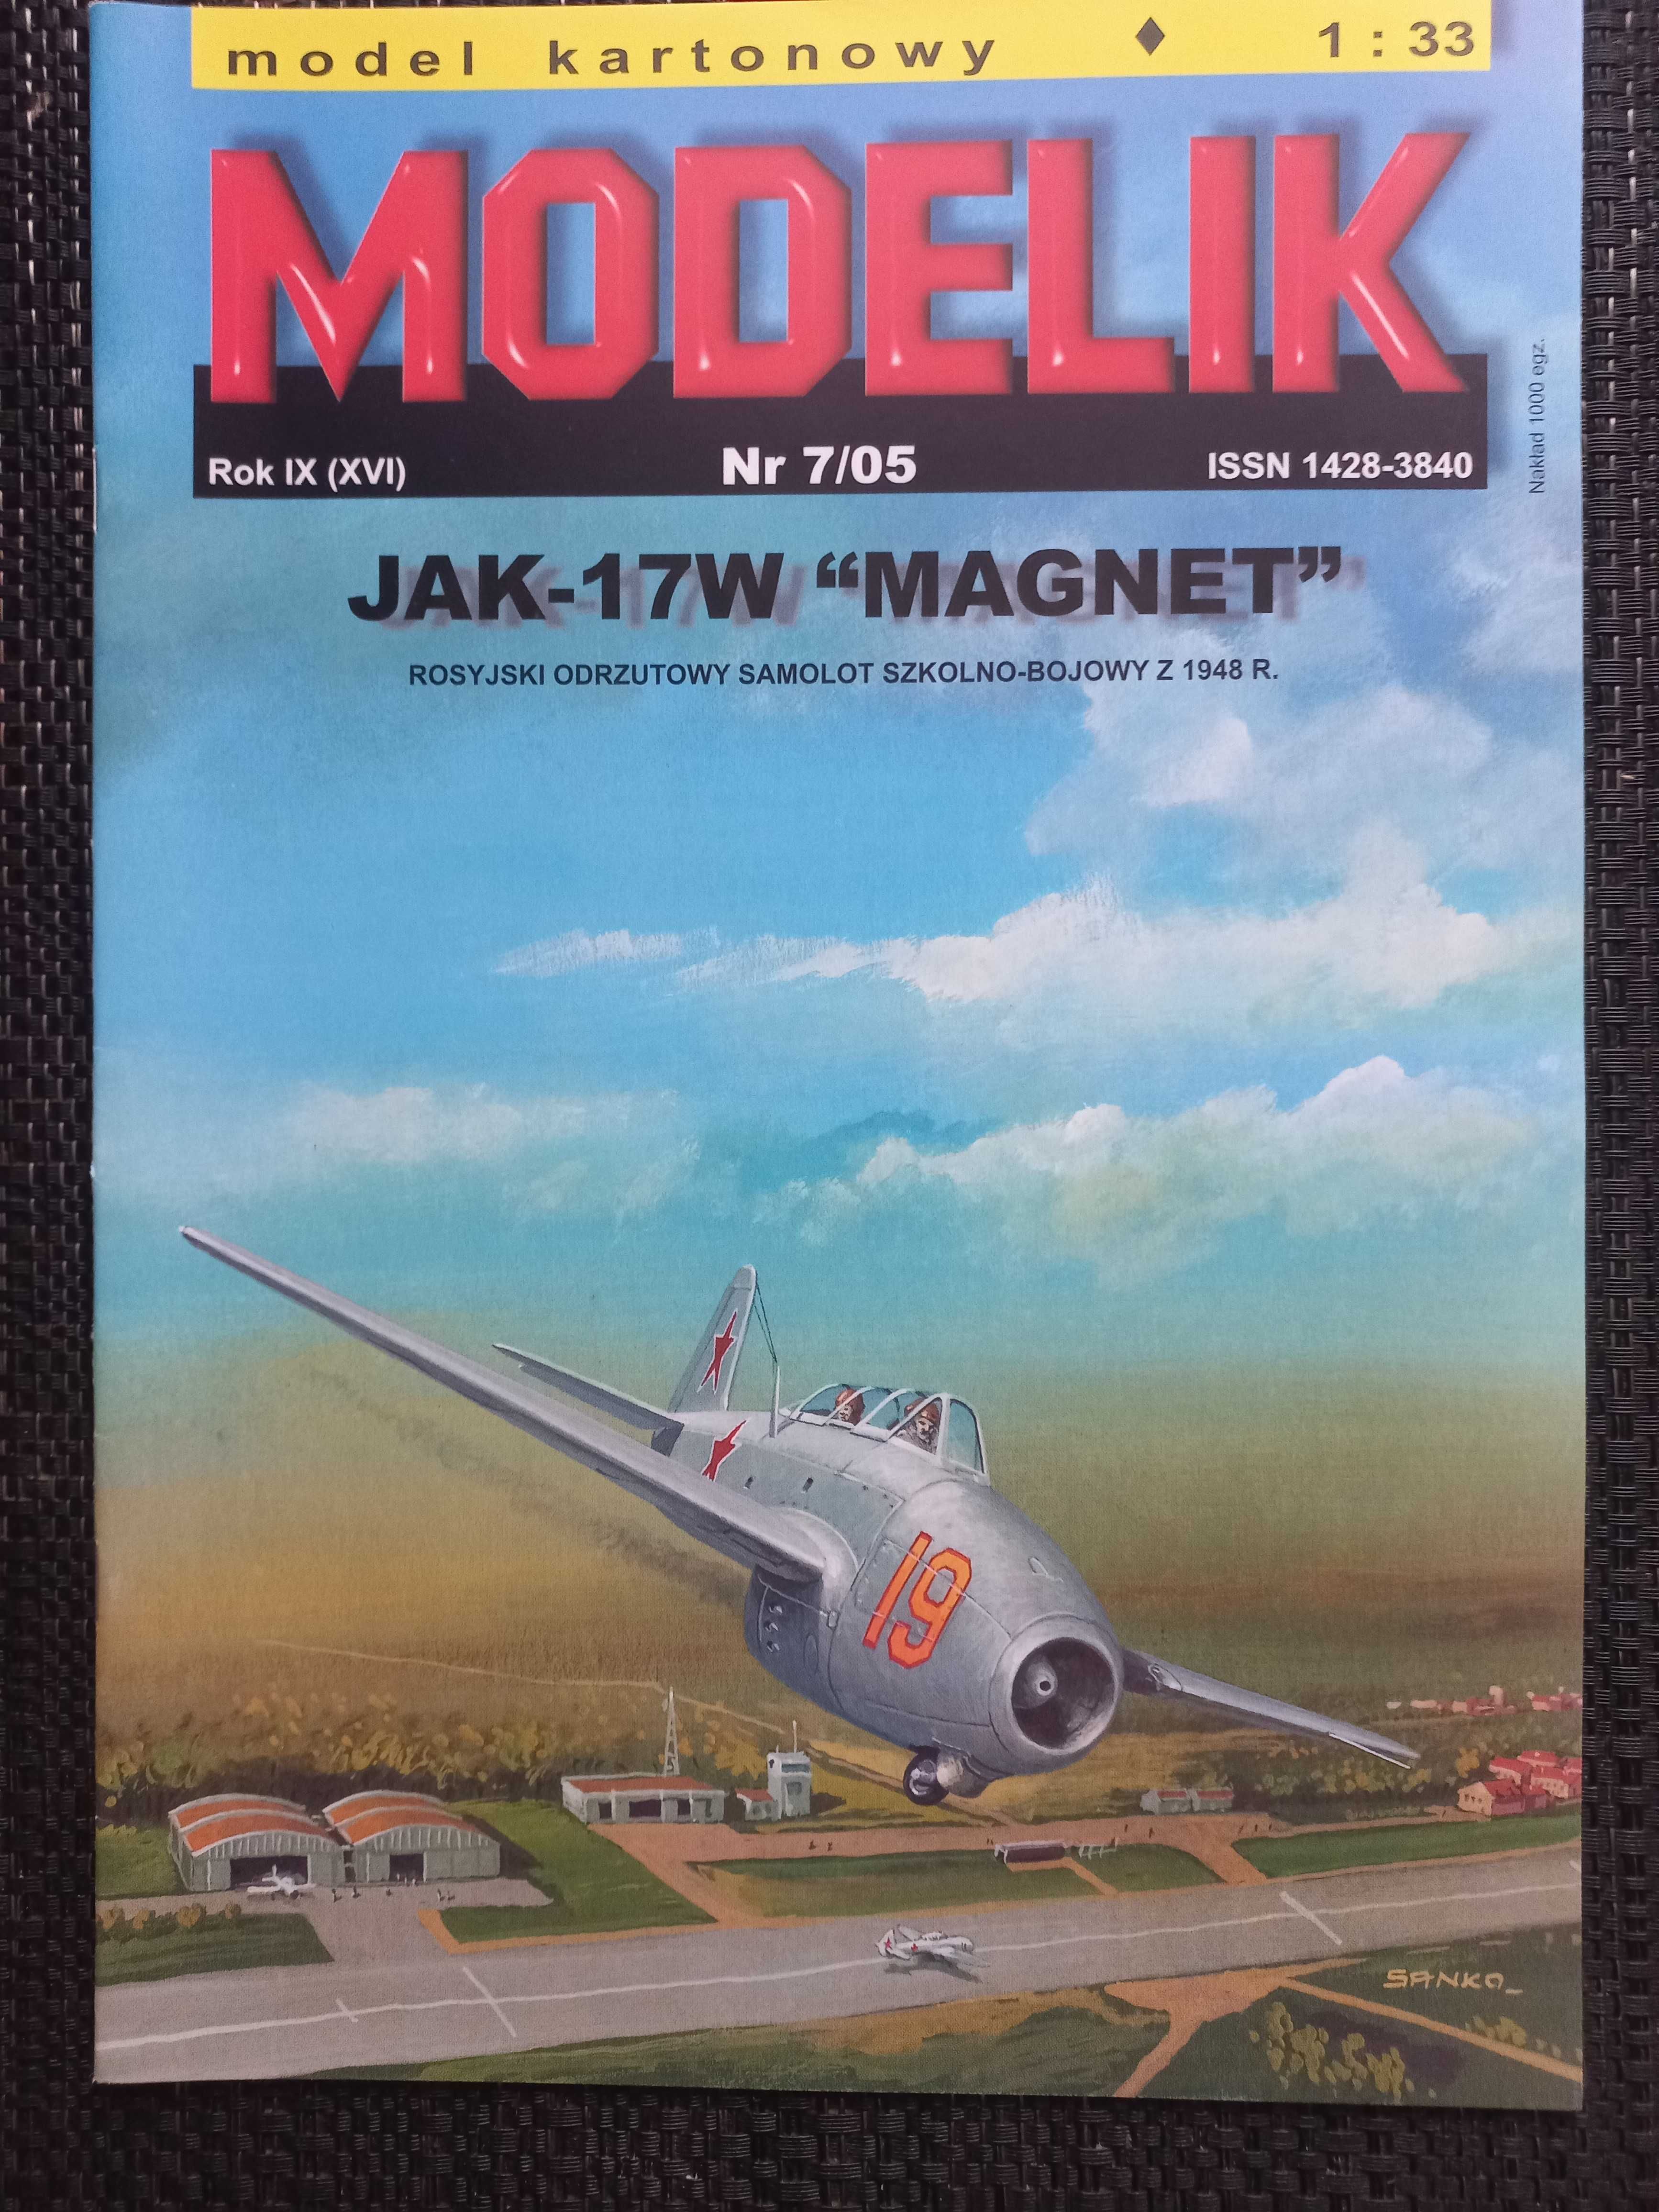 Model Kartonowy Modelik 7/2005 Samolot JAK-17W MAGNET